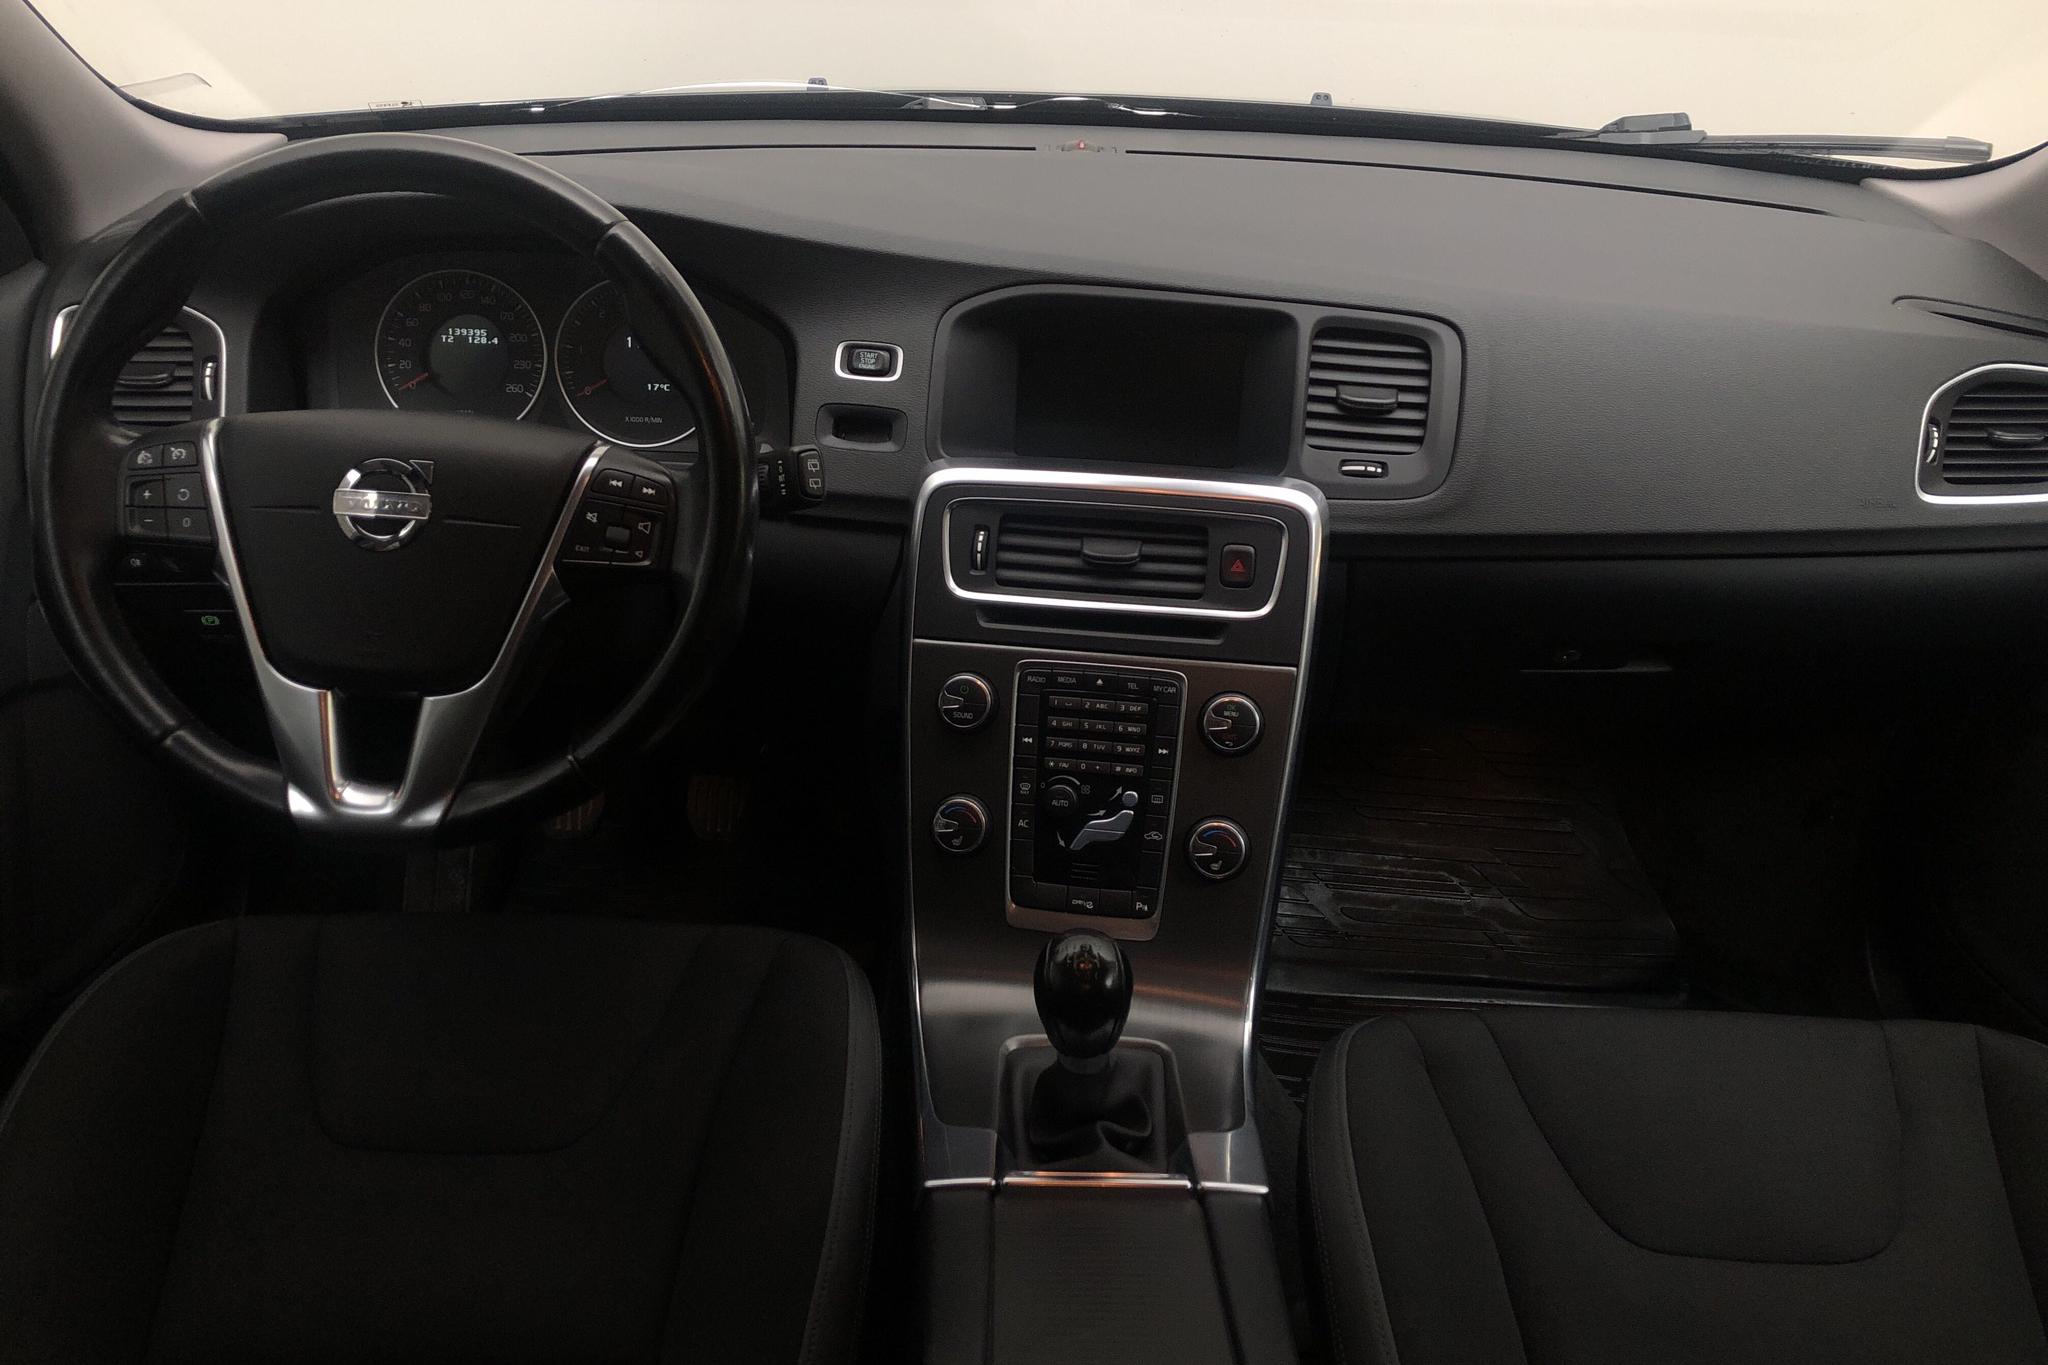 Volvo V60 1.6D DRIVe (115hk) - 139 400 km - Manual - black - 2012